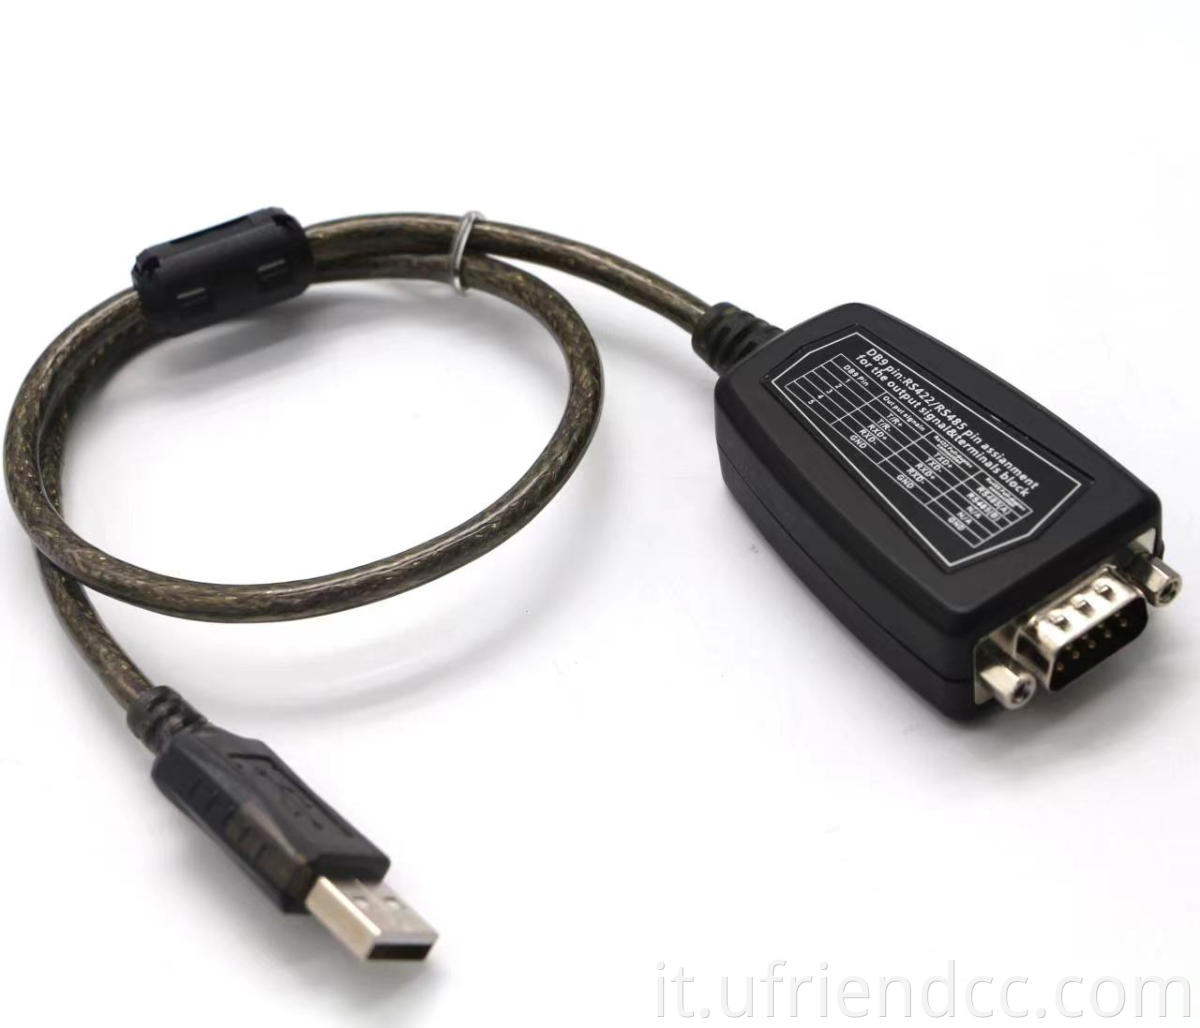 Buona chipset RS232 compatibile cavo driver USB per registro dei cassa, modem,